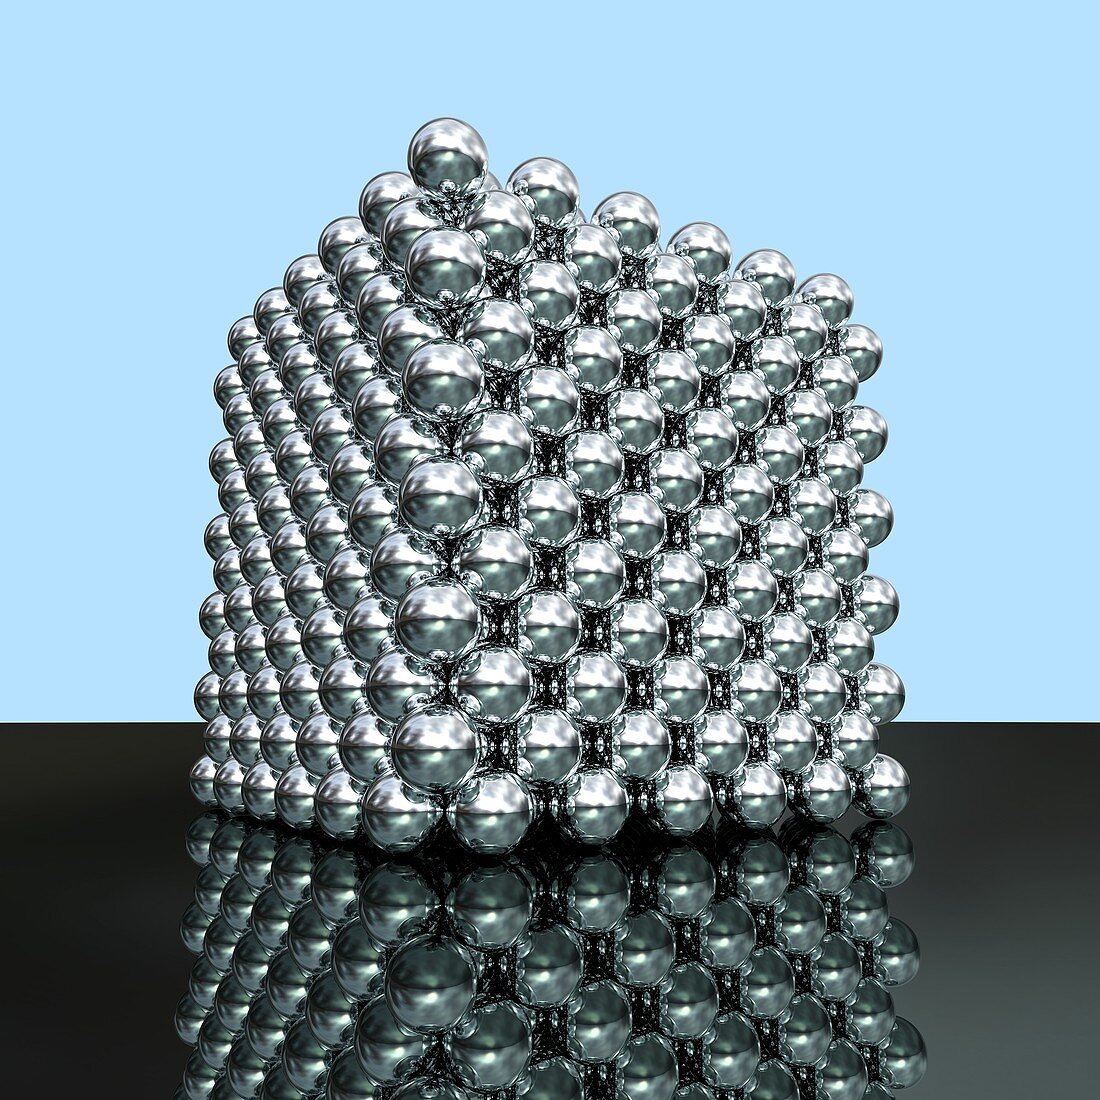 Crystal structure of thorium,artwork